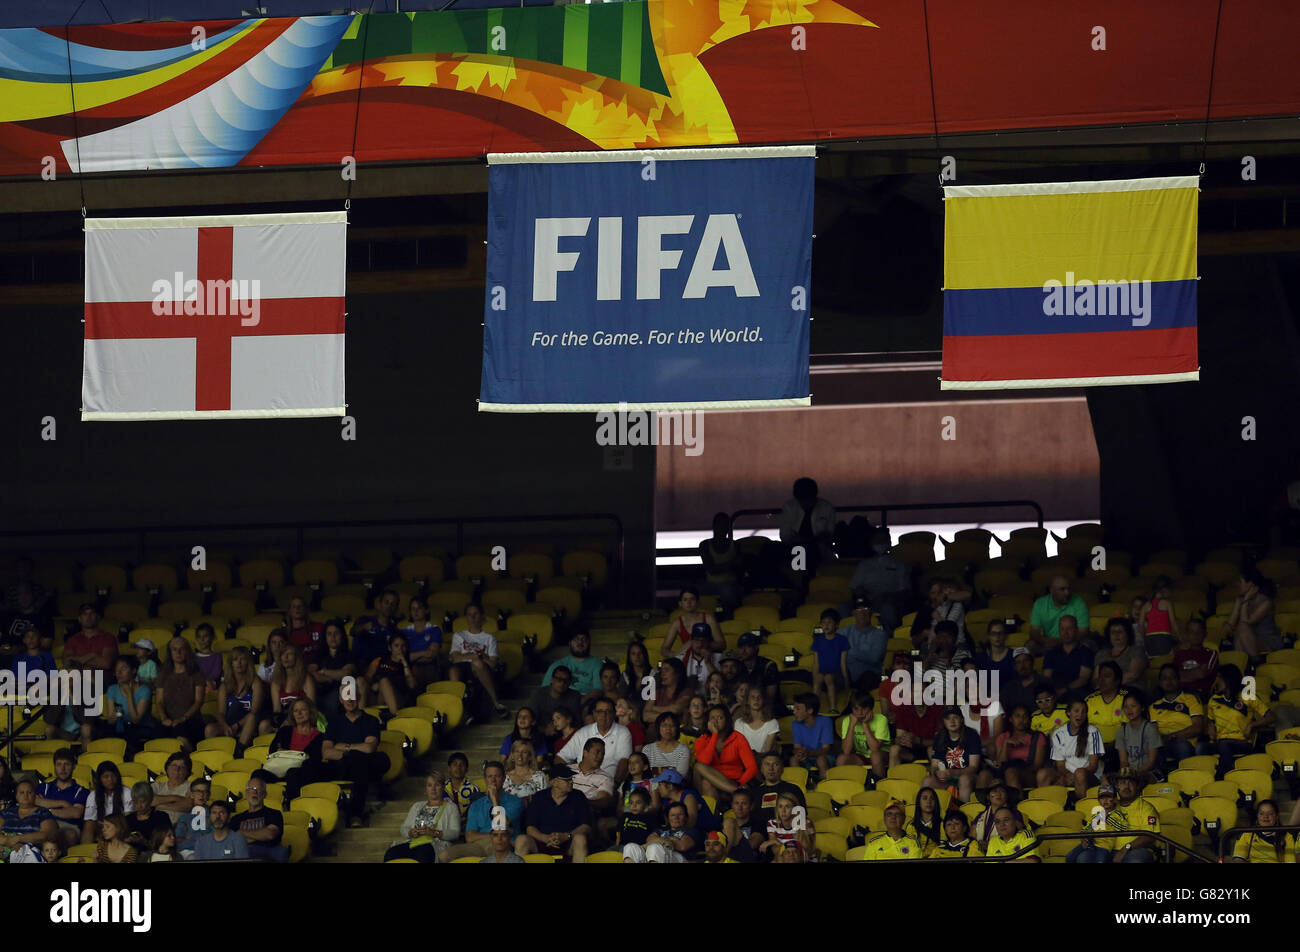 Les drapeaux de la FIFA et du pays volent dans le stade lors du match du groupe F de la coupe du monde des femmes de la FIFA 2015 entre l'Angleterre et la Colombie au stade olympique de Montréal, Québec, Canada. Banque D'Images